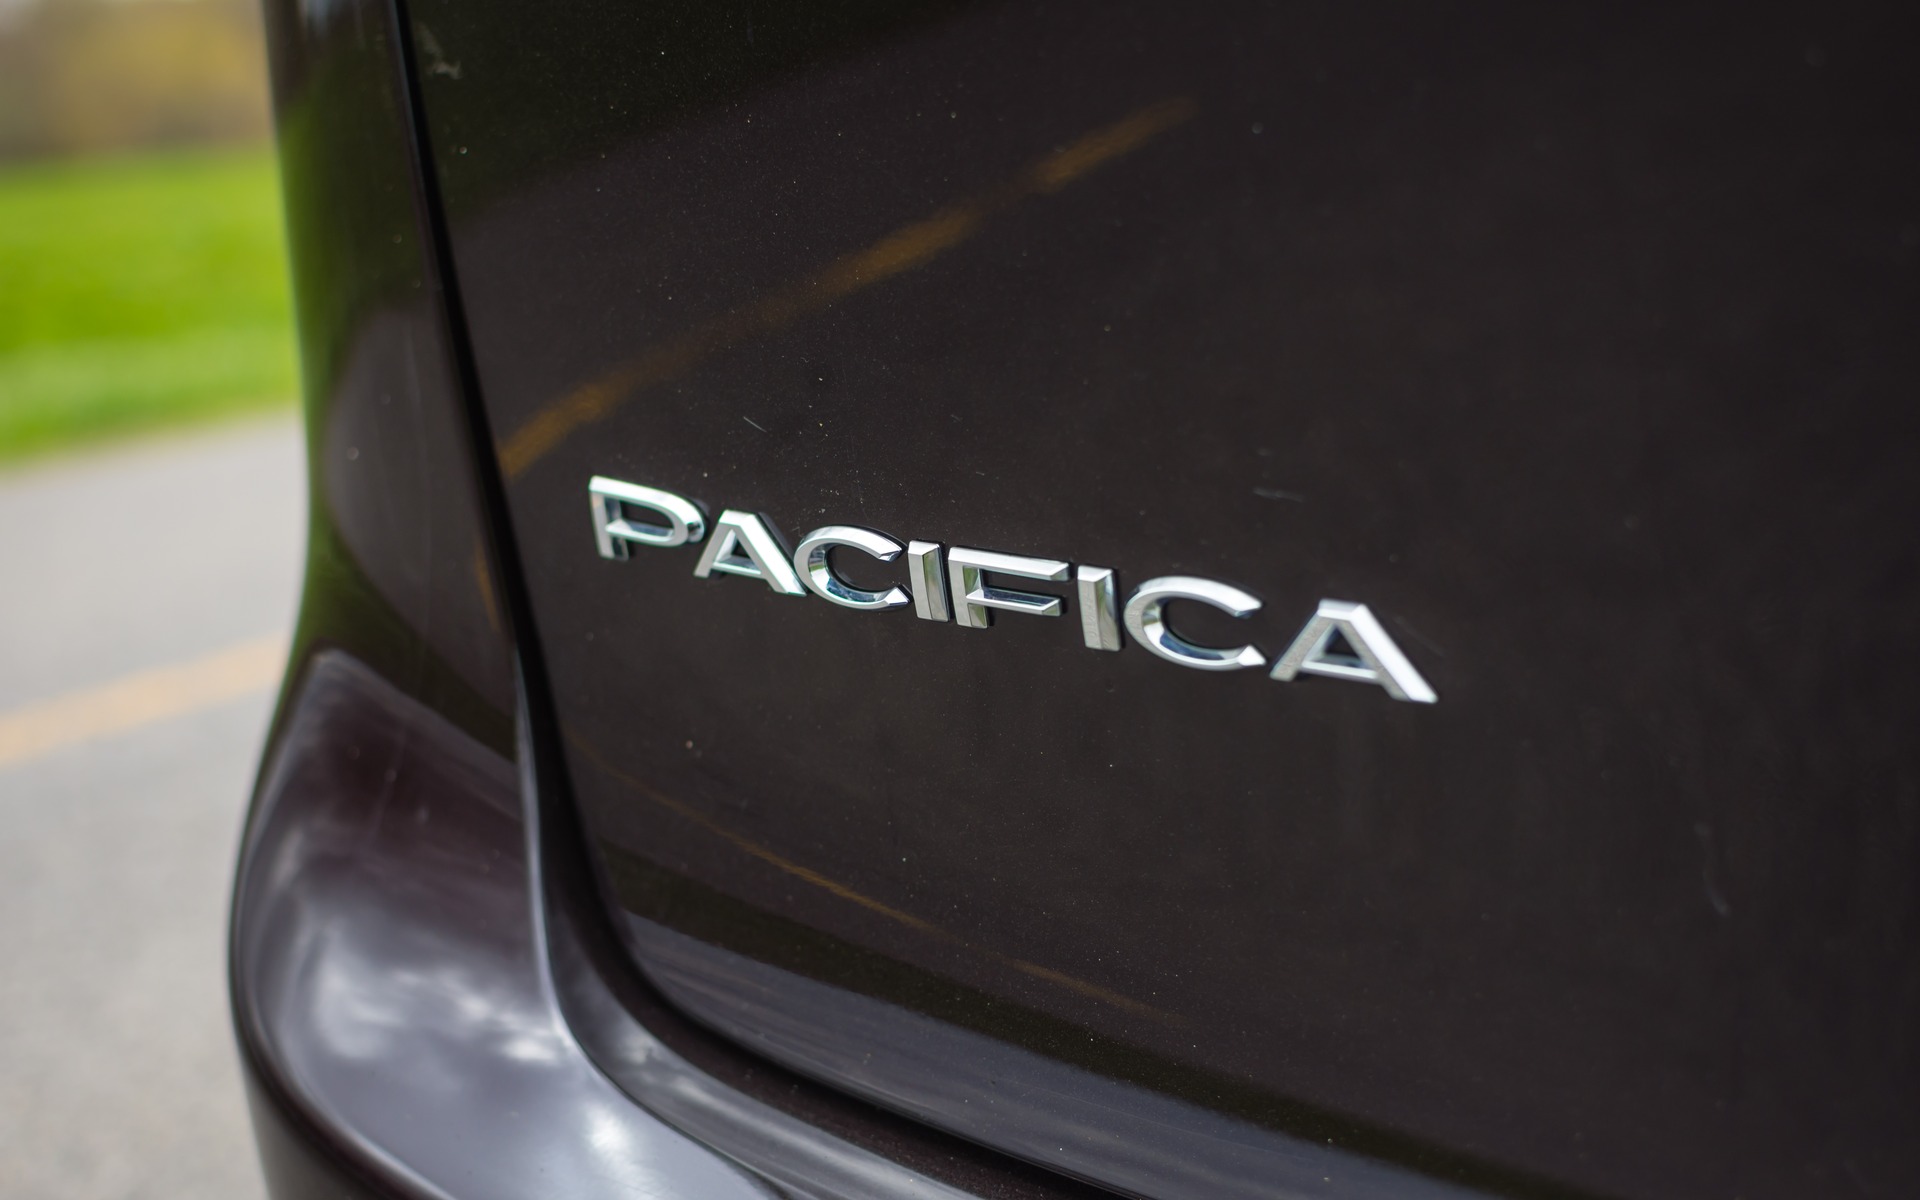 <p>Chrysler Pacifica Hybrid 2018</p>
<p>1er rang | 409,8 points</p>